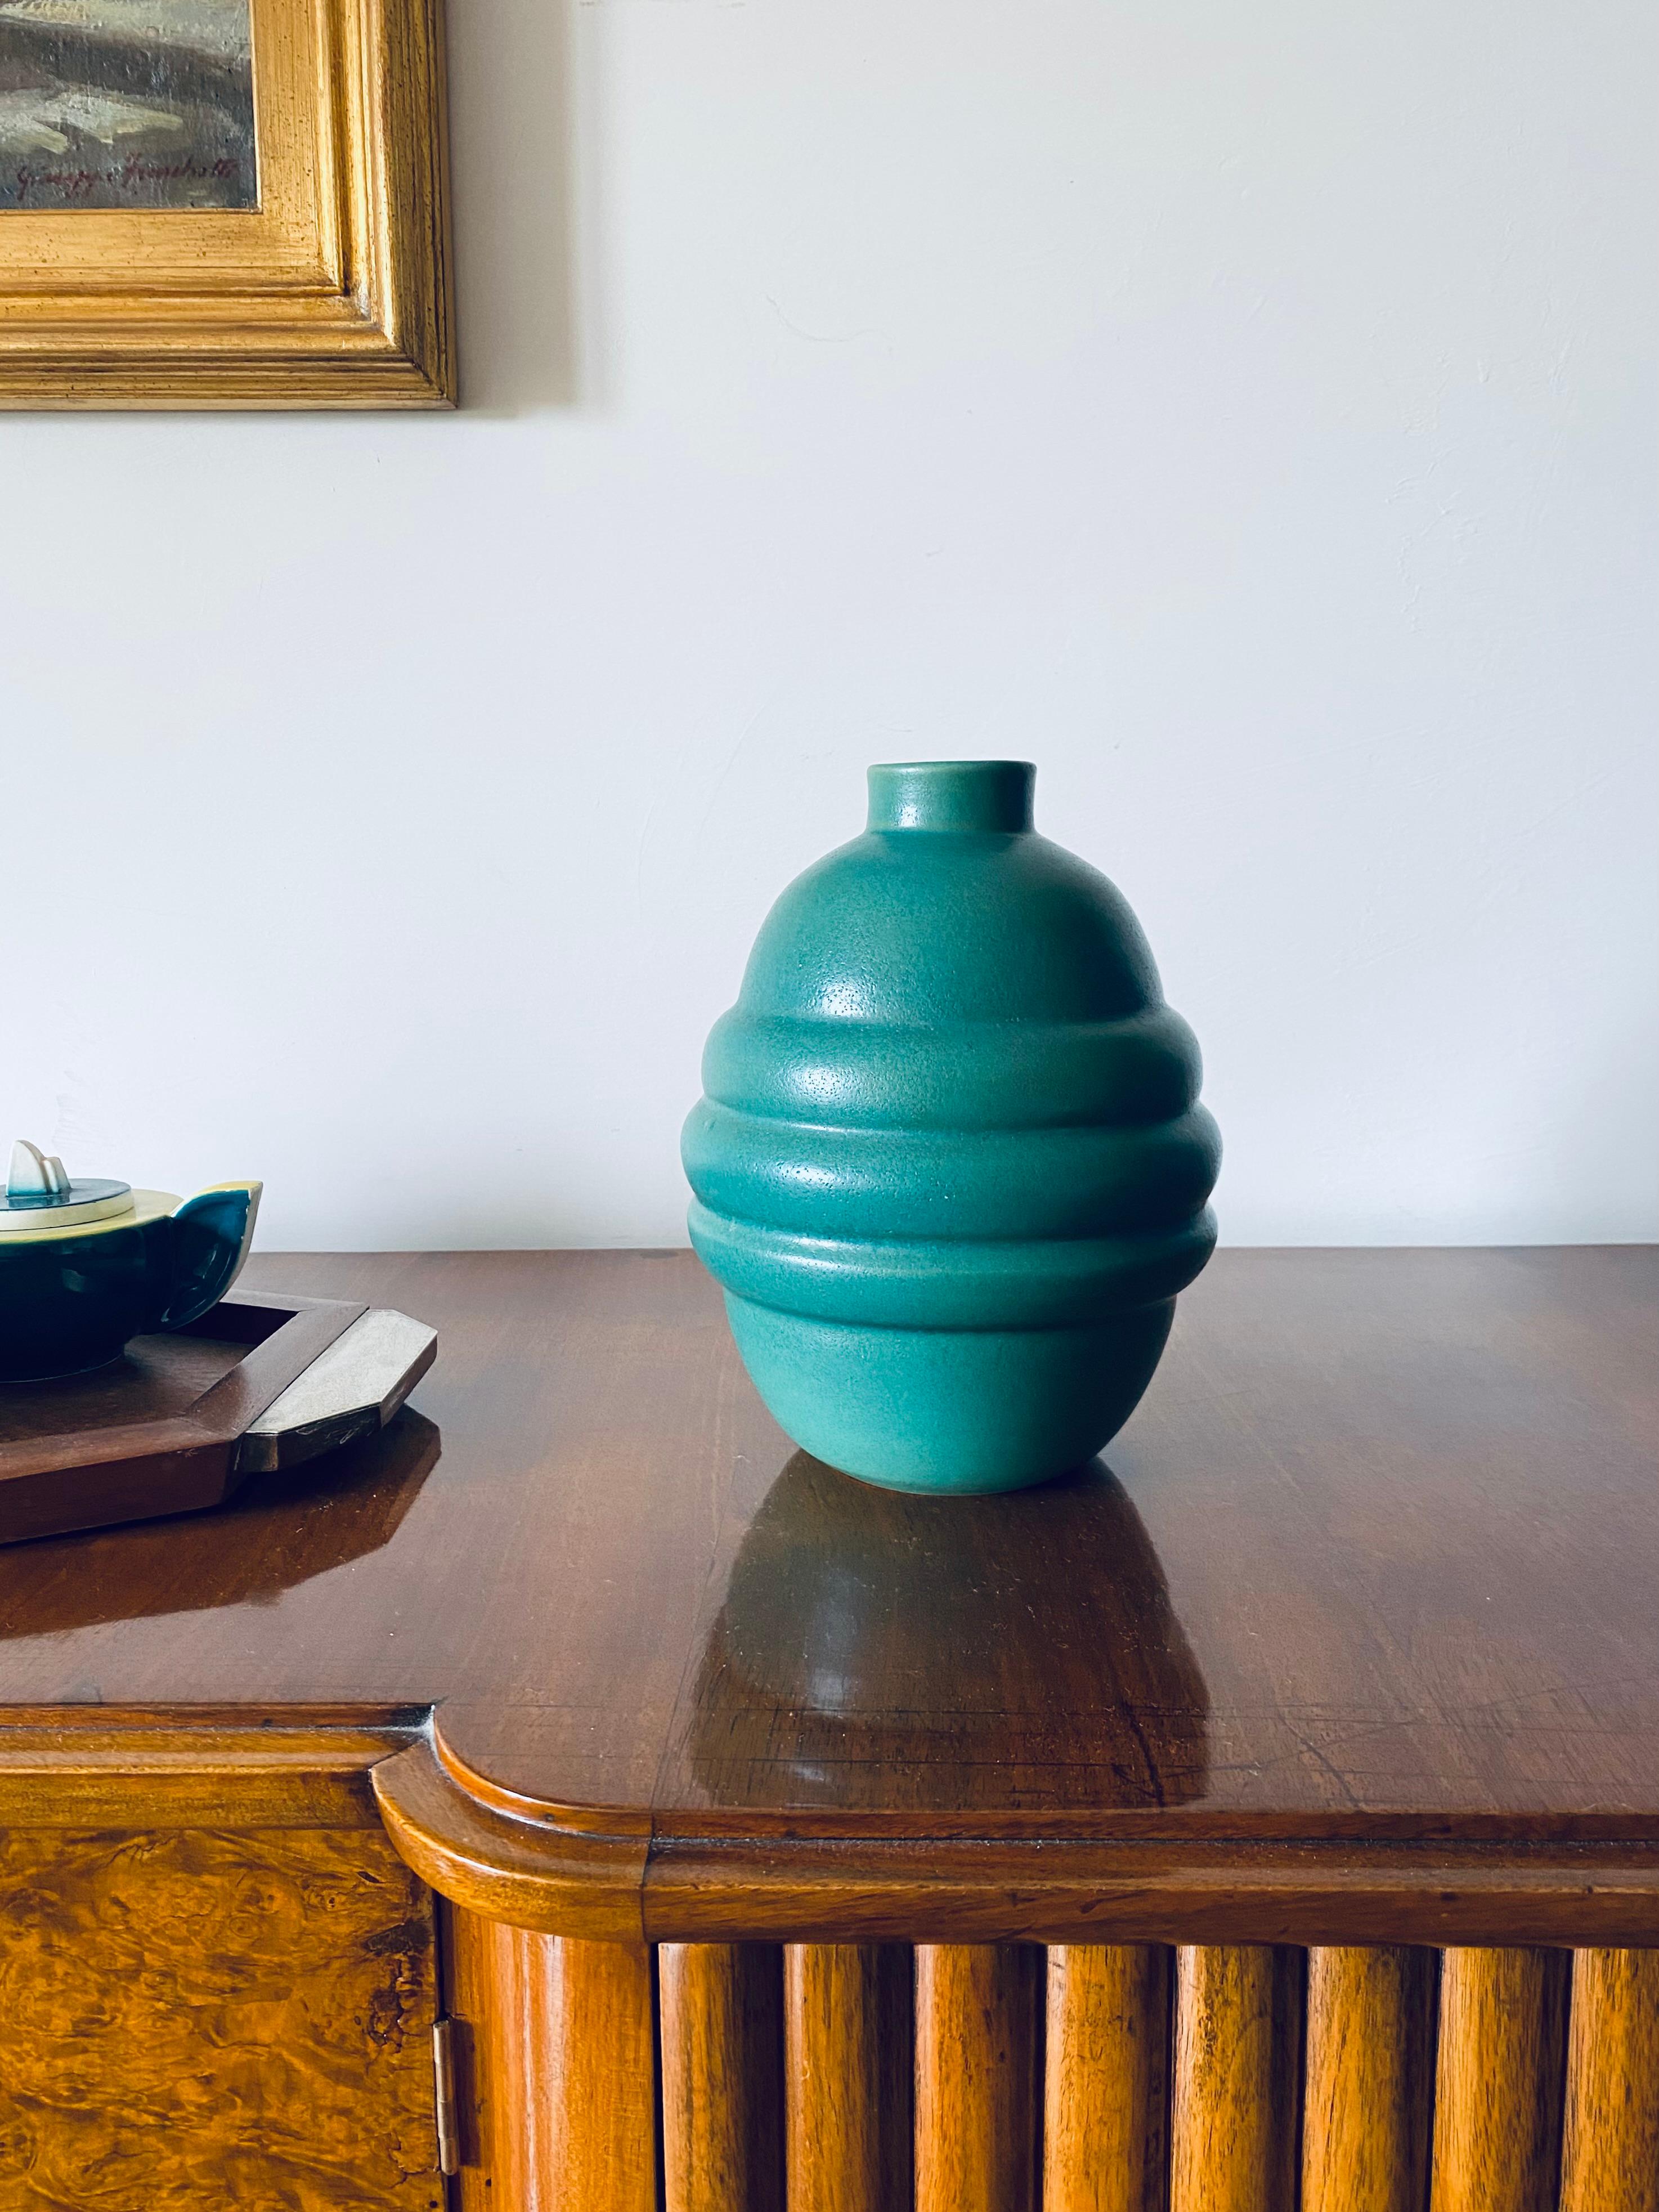 Vase globulaire Art Déco turquoise

Faïence

France années 1940

24 cm H - diam. 18 cm

Conditions : excellent